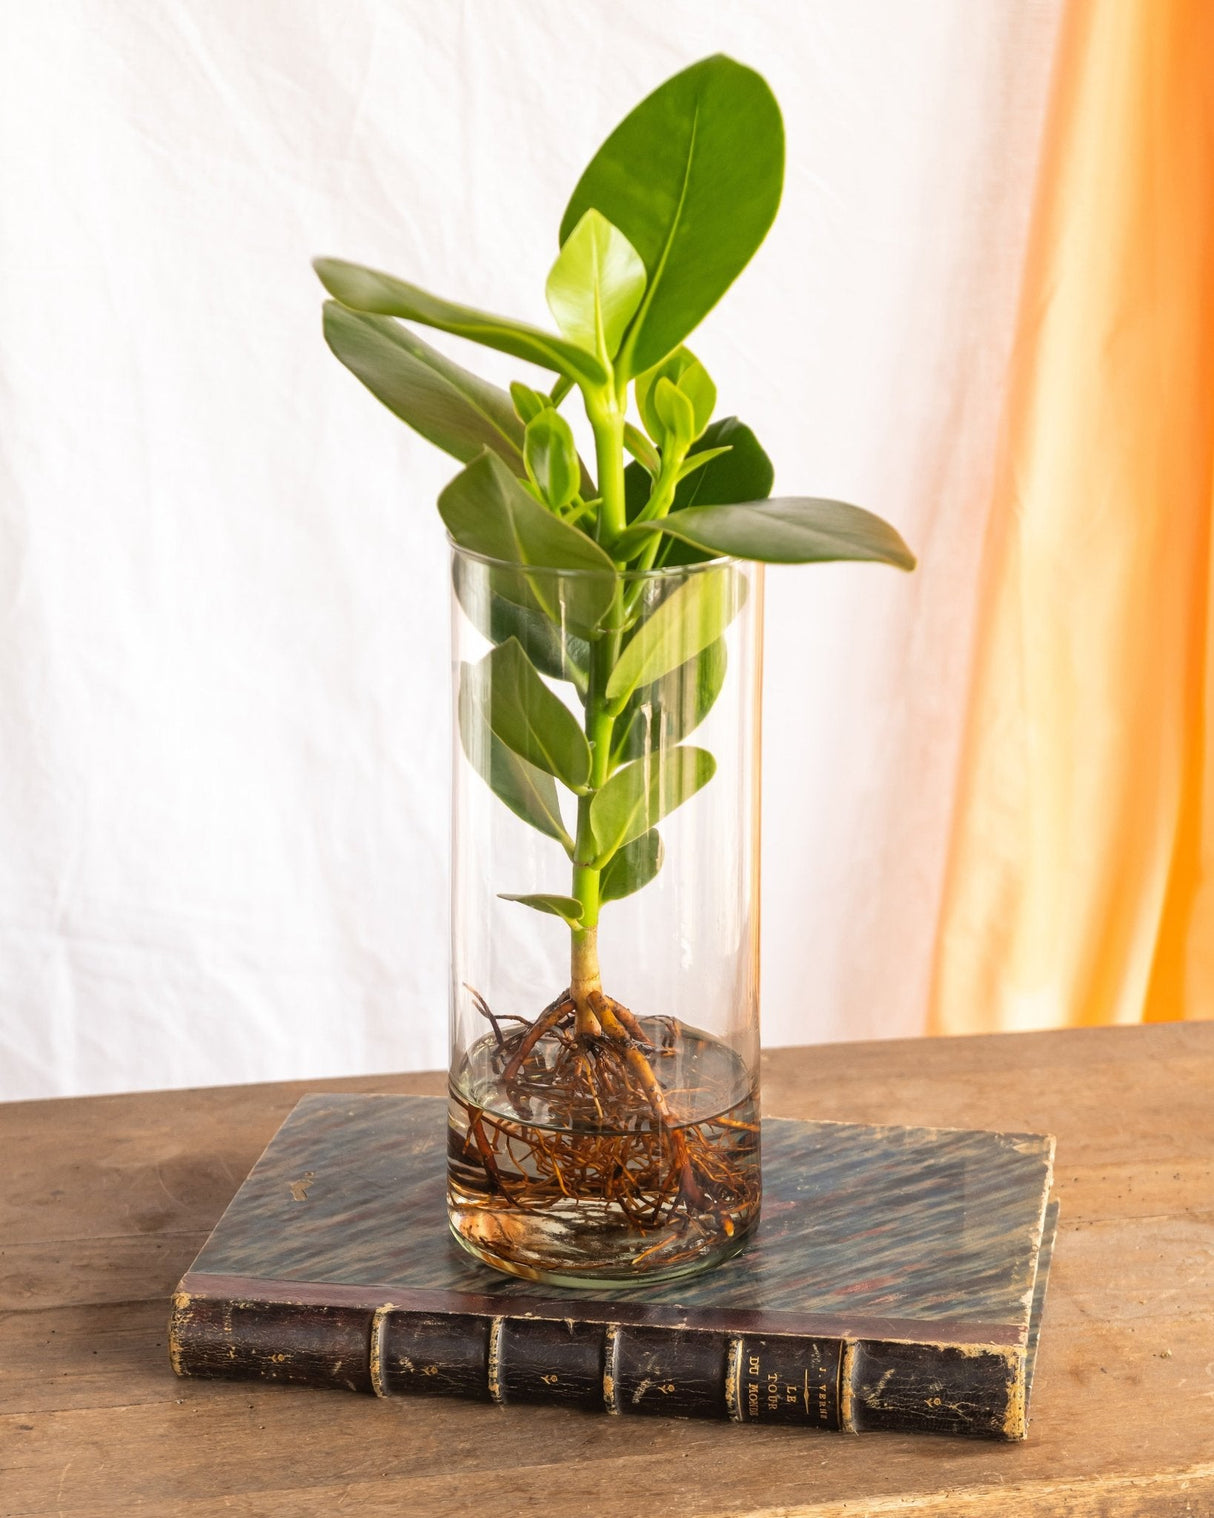 Plante d'intérieur - clusia en hydroculture et son vase en verre - h30cm,  ø12cm 30cm